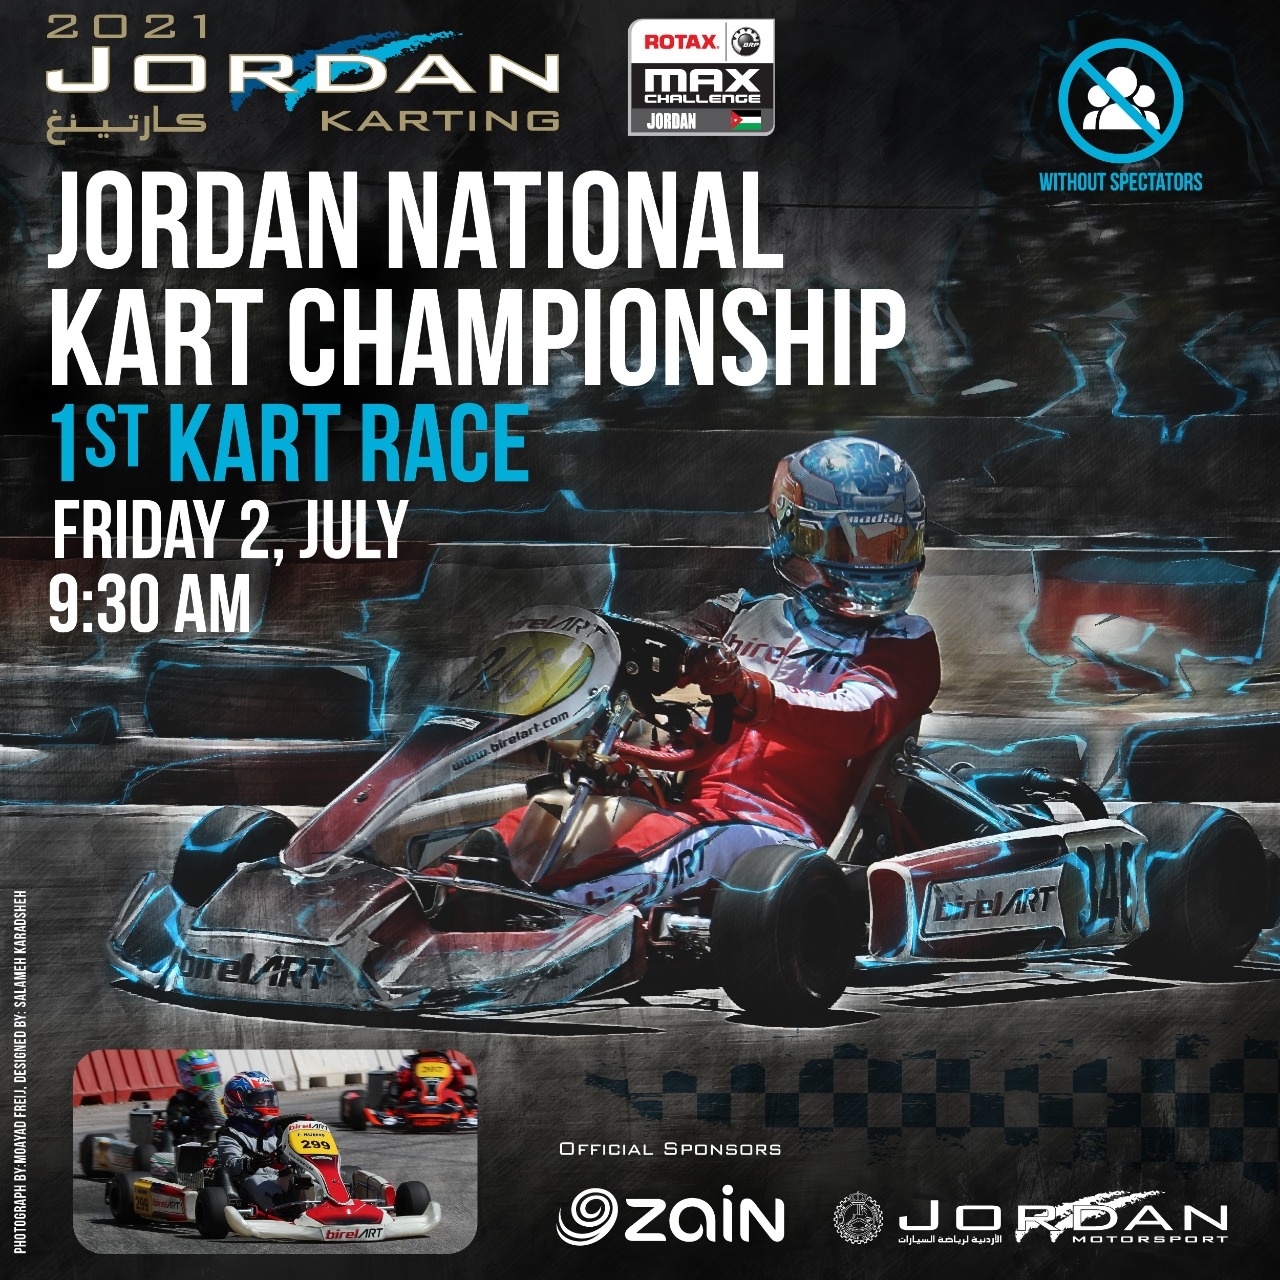 الجولة الأولى من بطولة الأردن لسباقات الكارتينغ تنطلق الجمعة المقبل